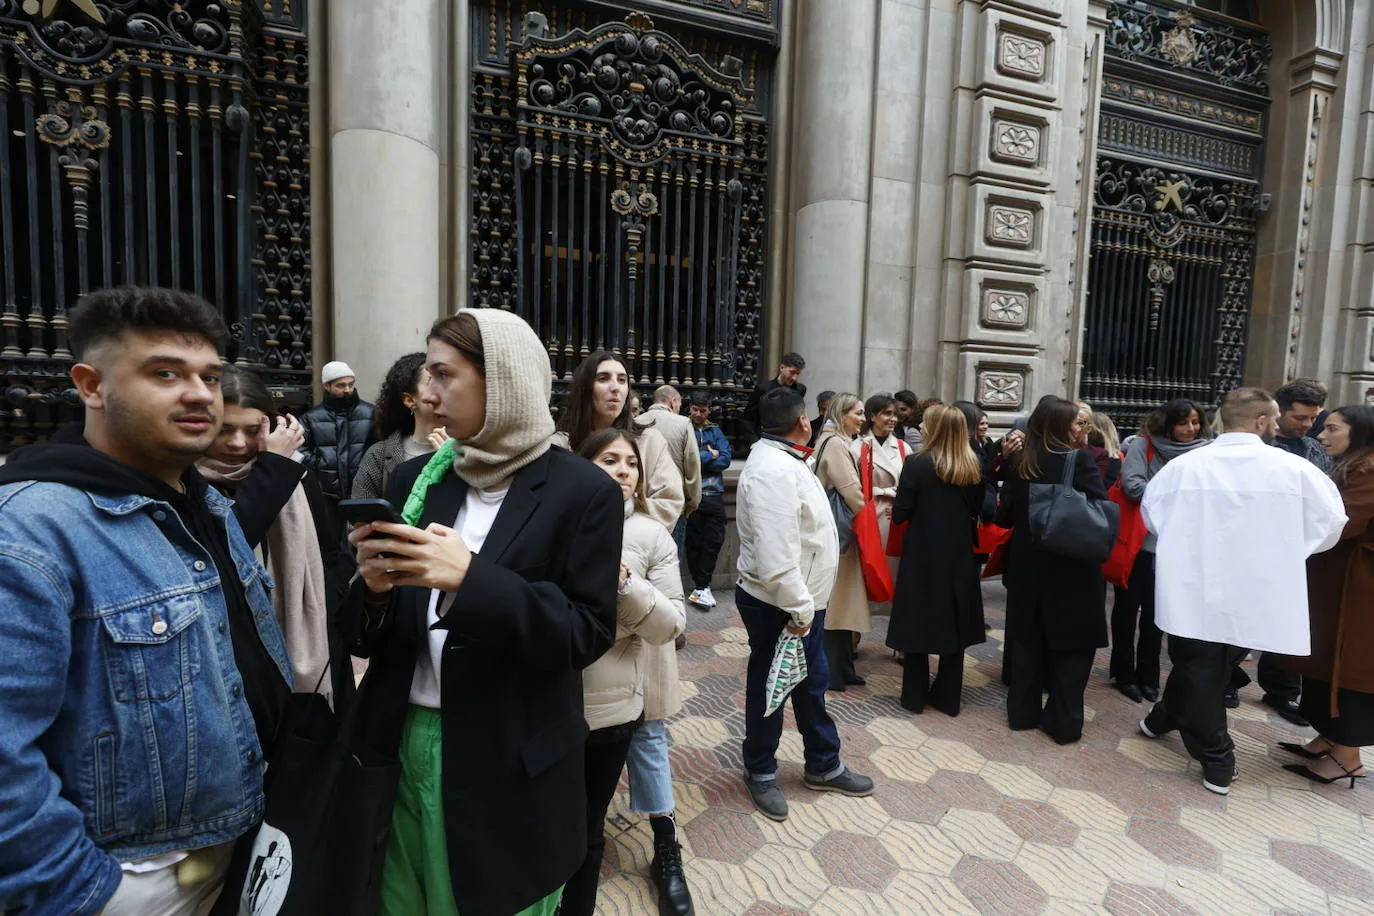 Fotos: Una macrotienda de Zara abre sus puertas en Valencia